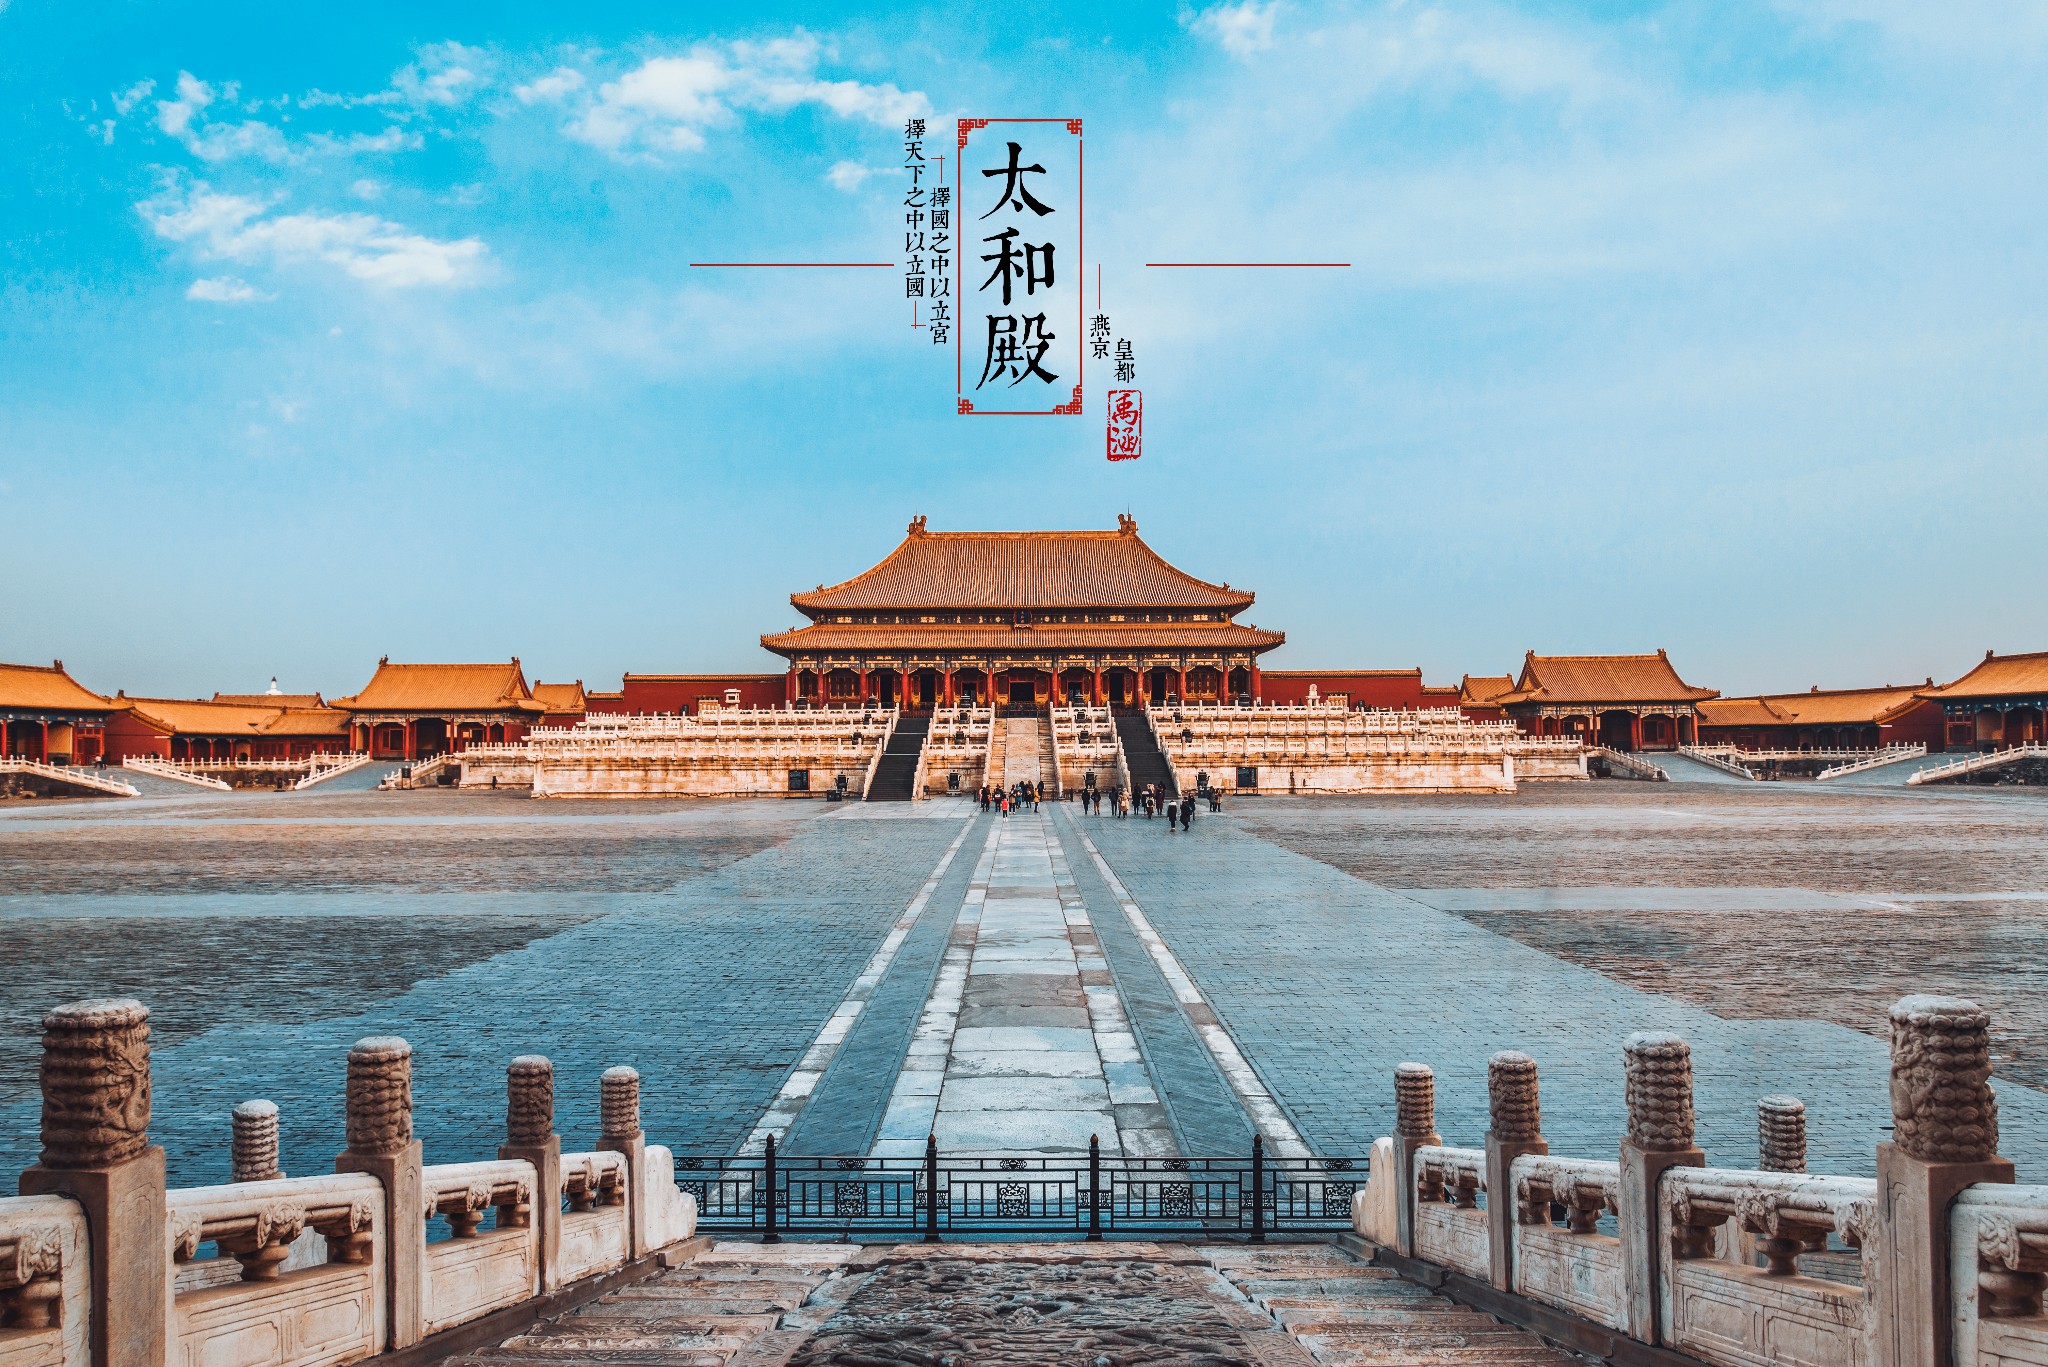 《北京自由行攻略》百年皇都——北京市区景点全集 ,禹涵的摄影指南